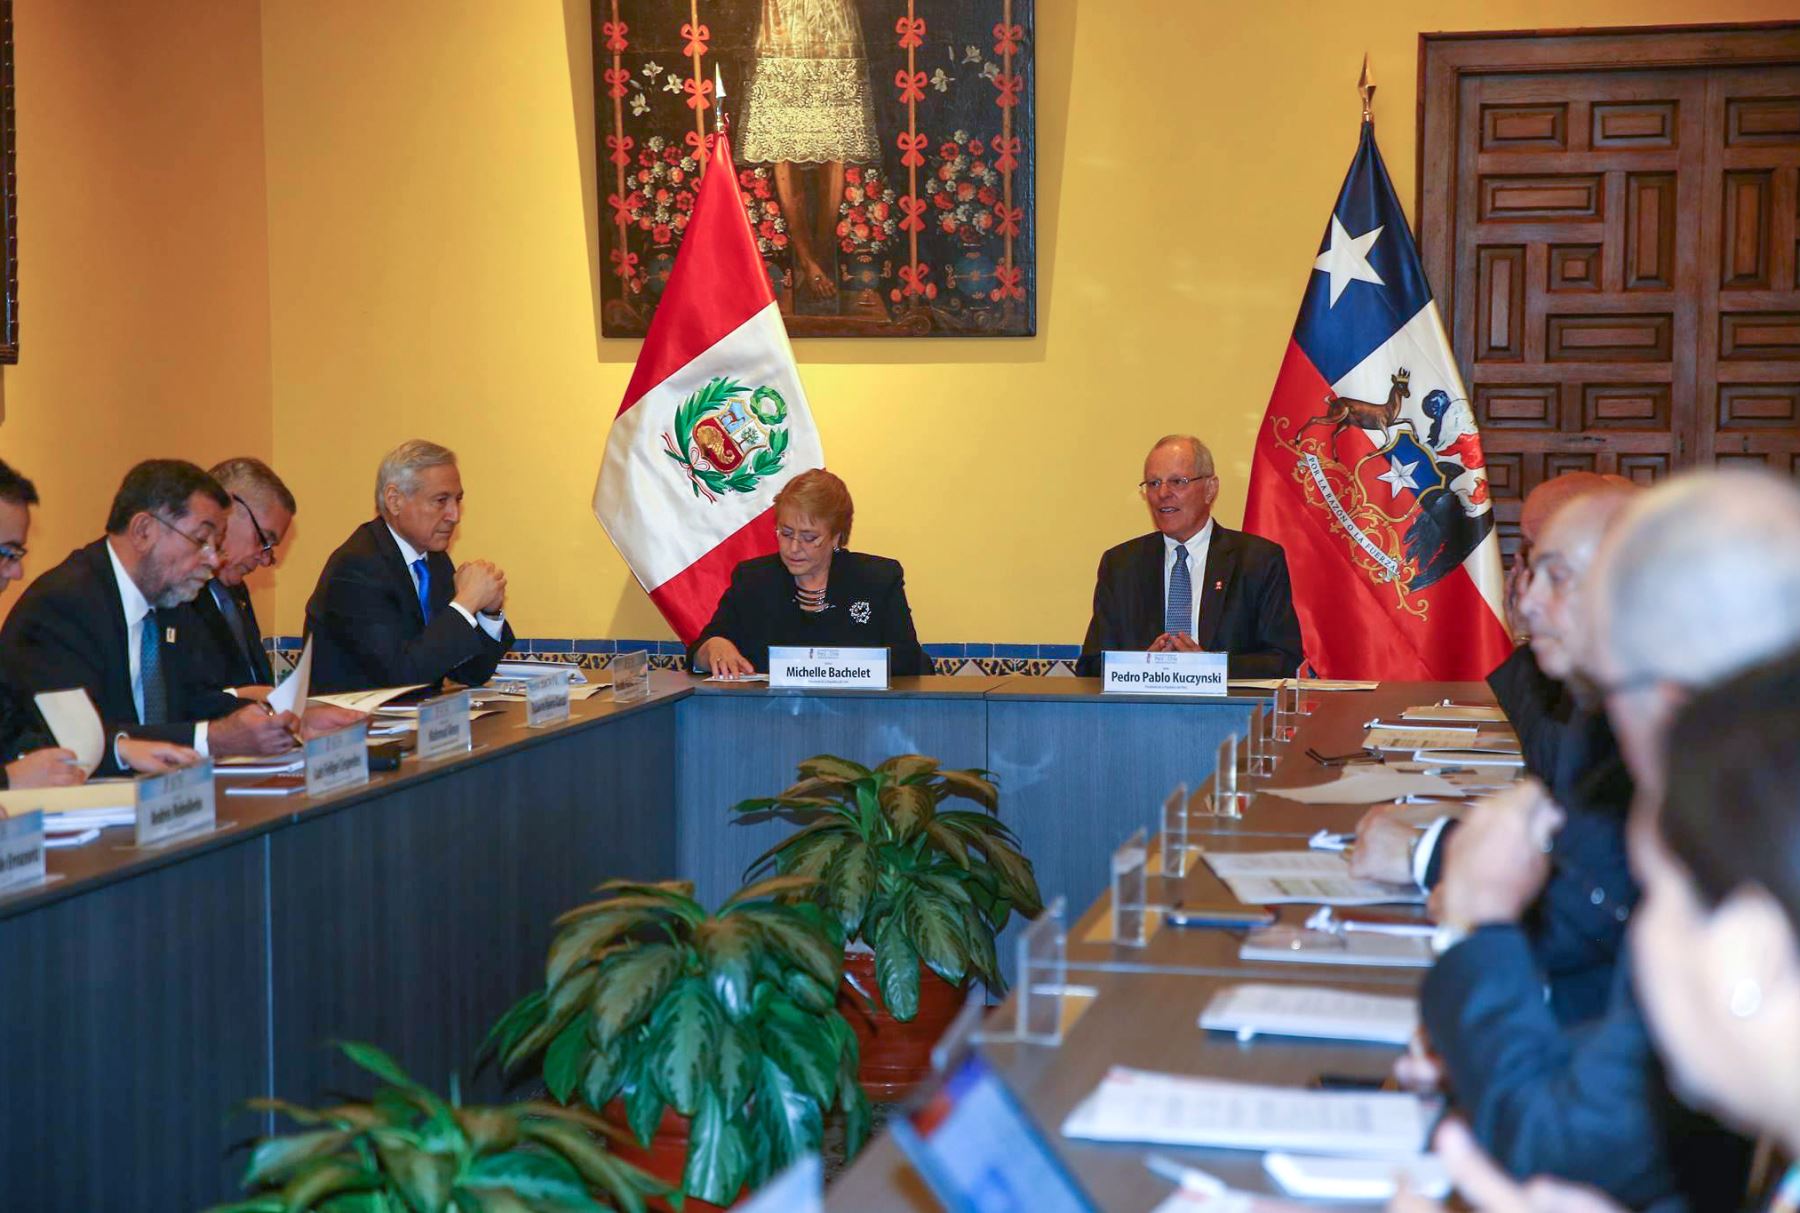 Los presidentes del Perú, Pedro Pablo Kuczynski, y de Chile, Michelle Bachelet, se reunen con empresarios de ambos países en la sede de la Cancillería, en el marco del Encuentro Presidencial y I Gabinete Binacional Perú-Chile. Foto: ANDINA/ Prensa Presidencia